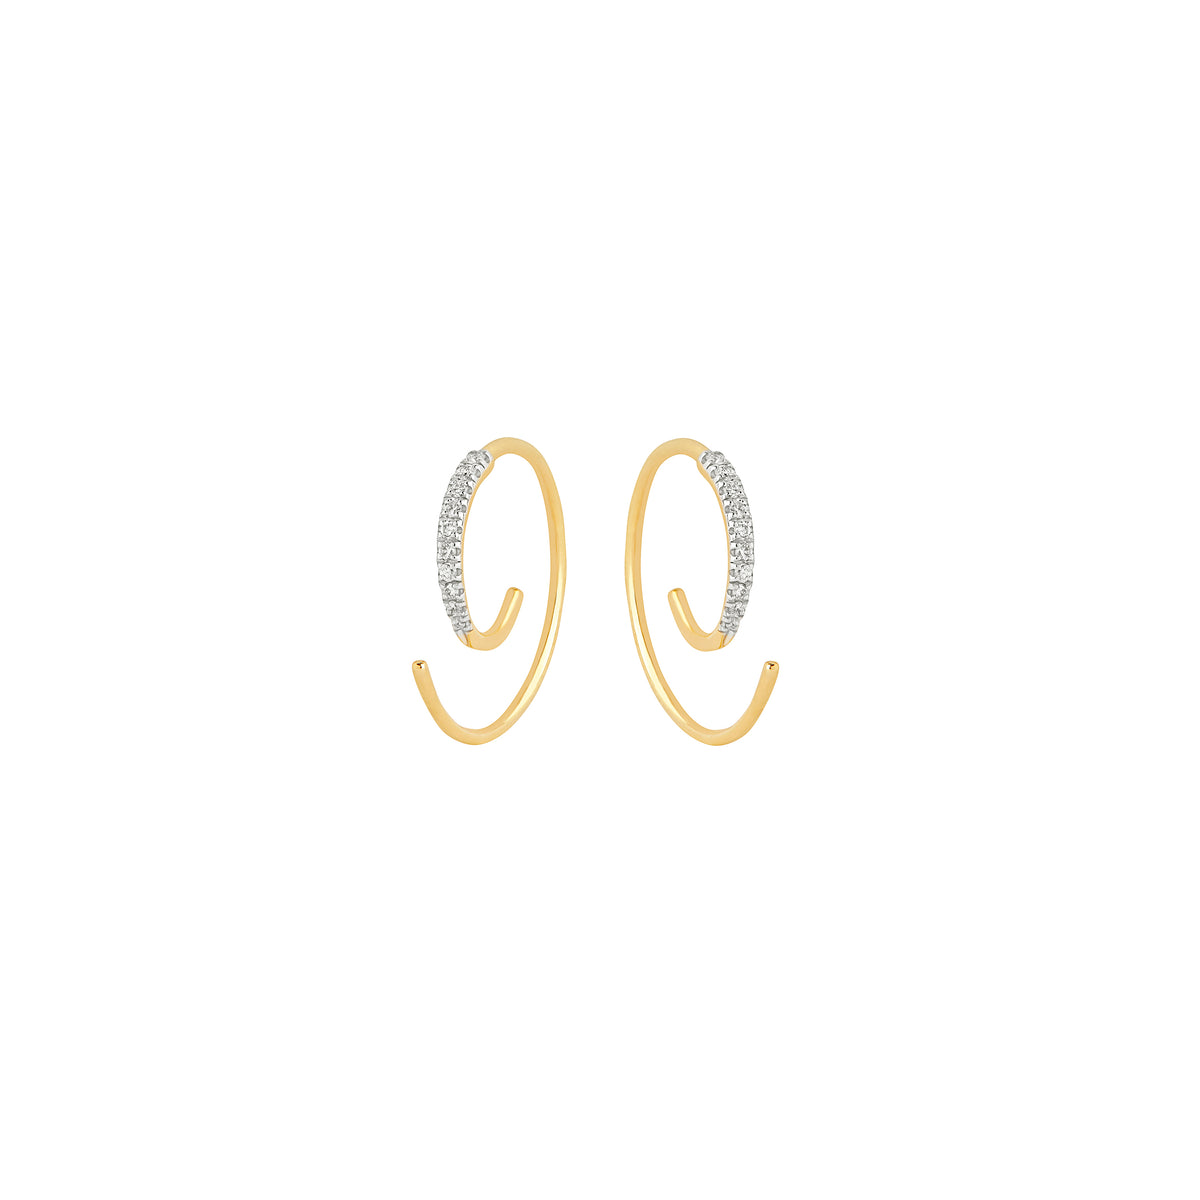 Loop Earrings